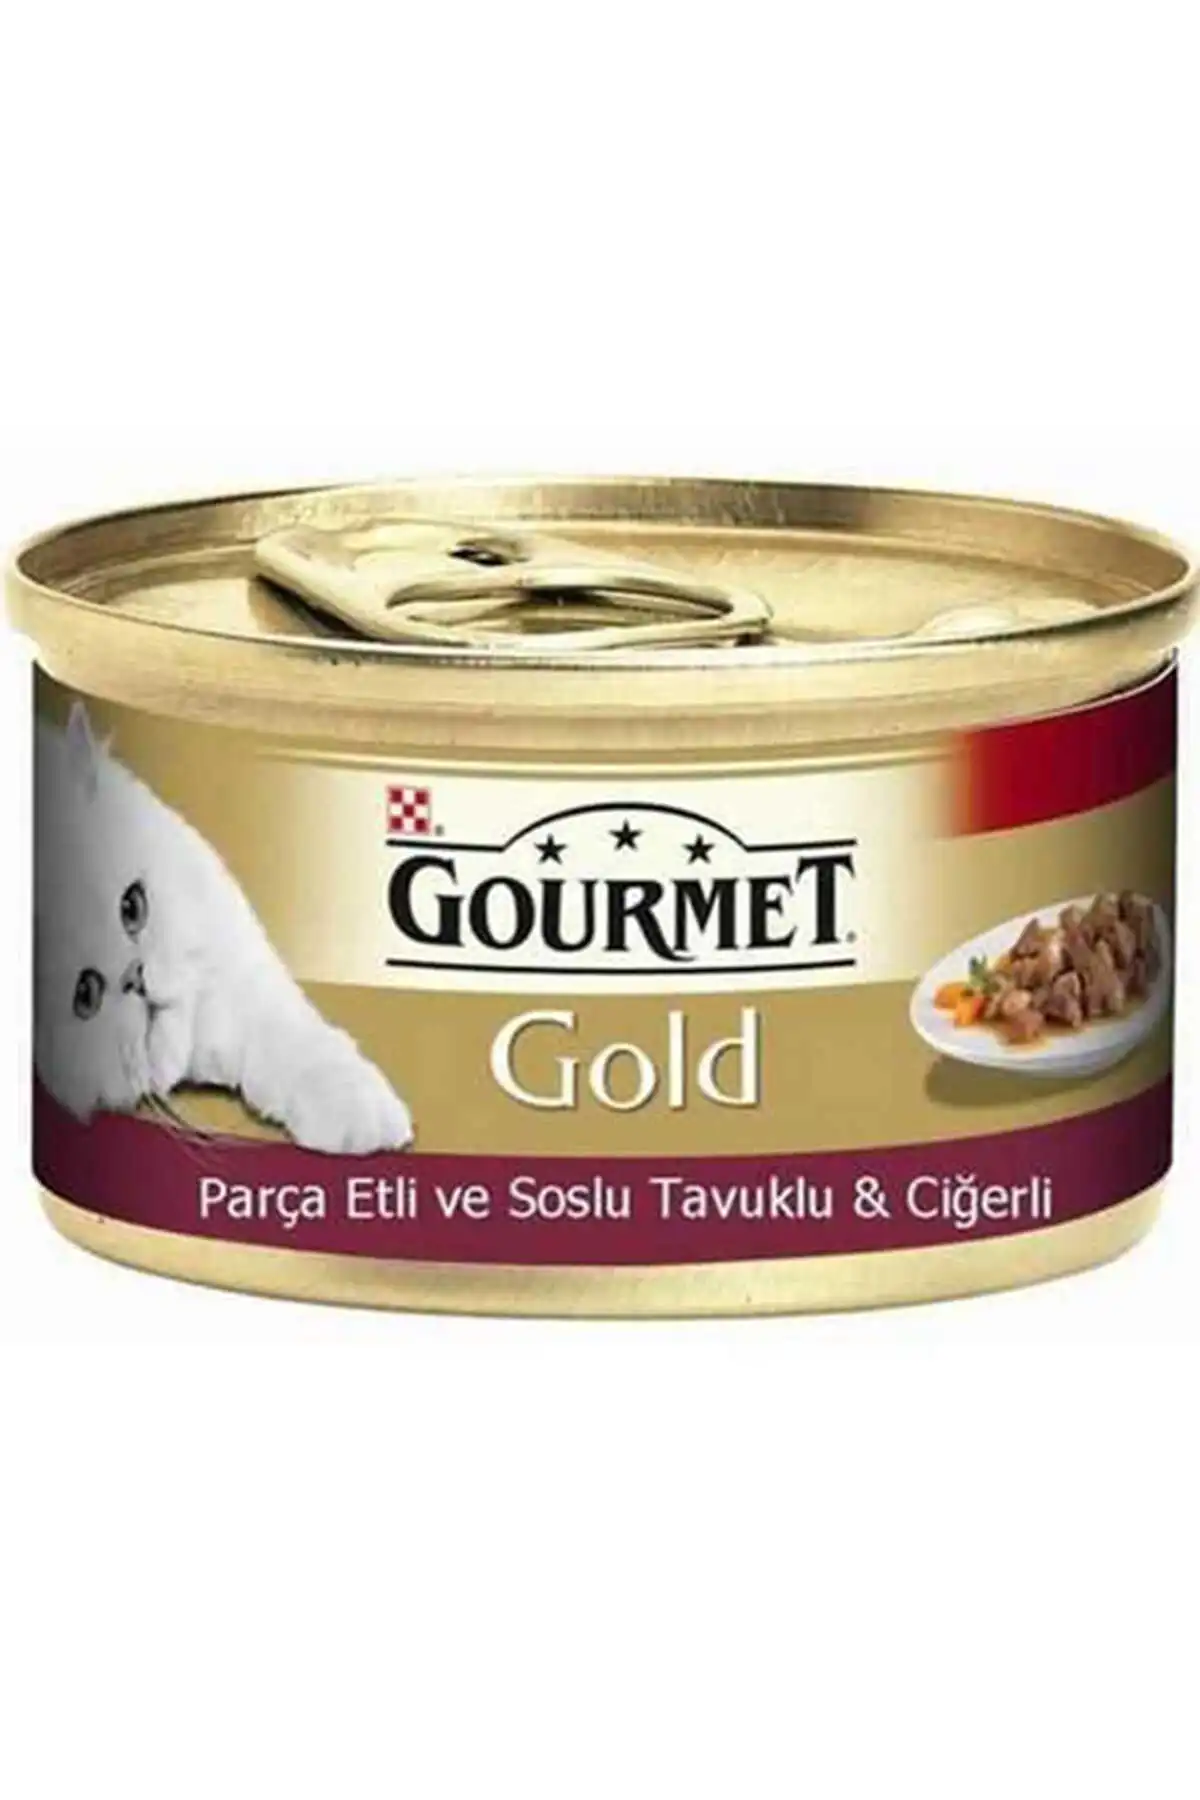 Gourmet Gold Tavuk ve Ciğer Parça Et Soslu Yetişkin Kedi Konservesi 85gr